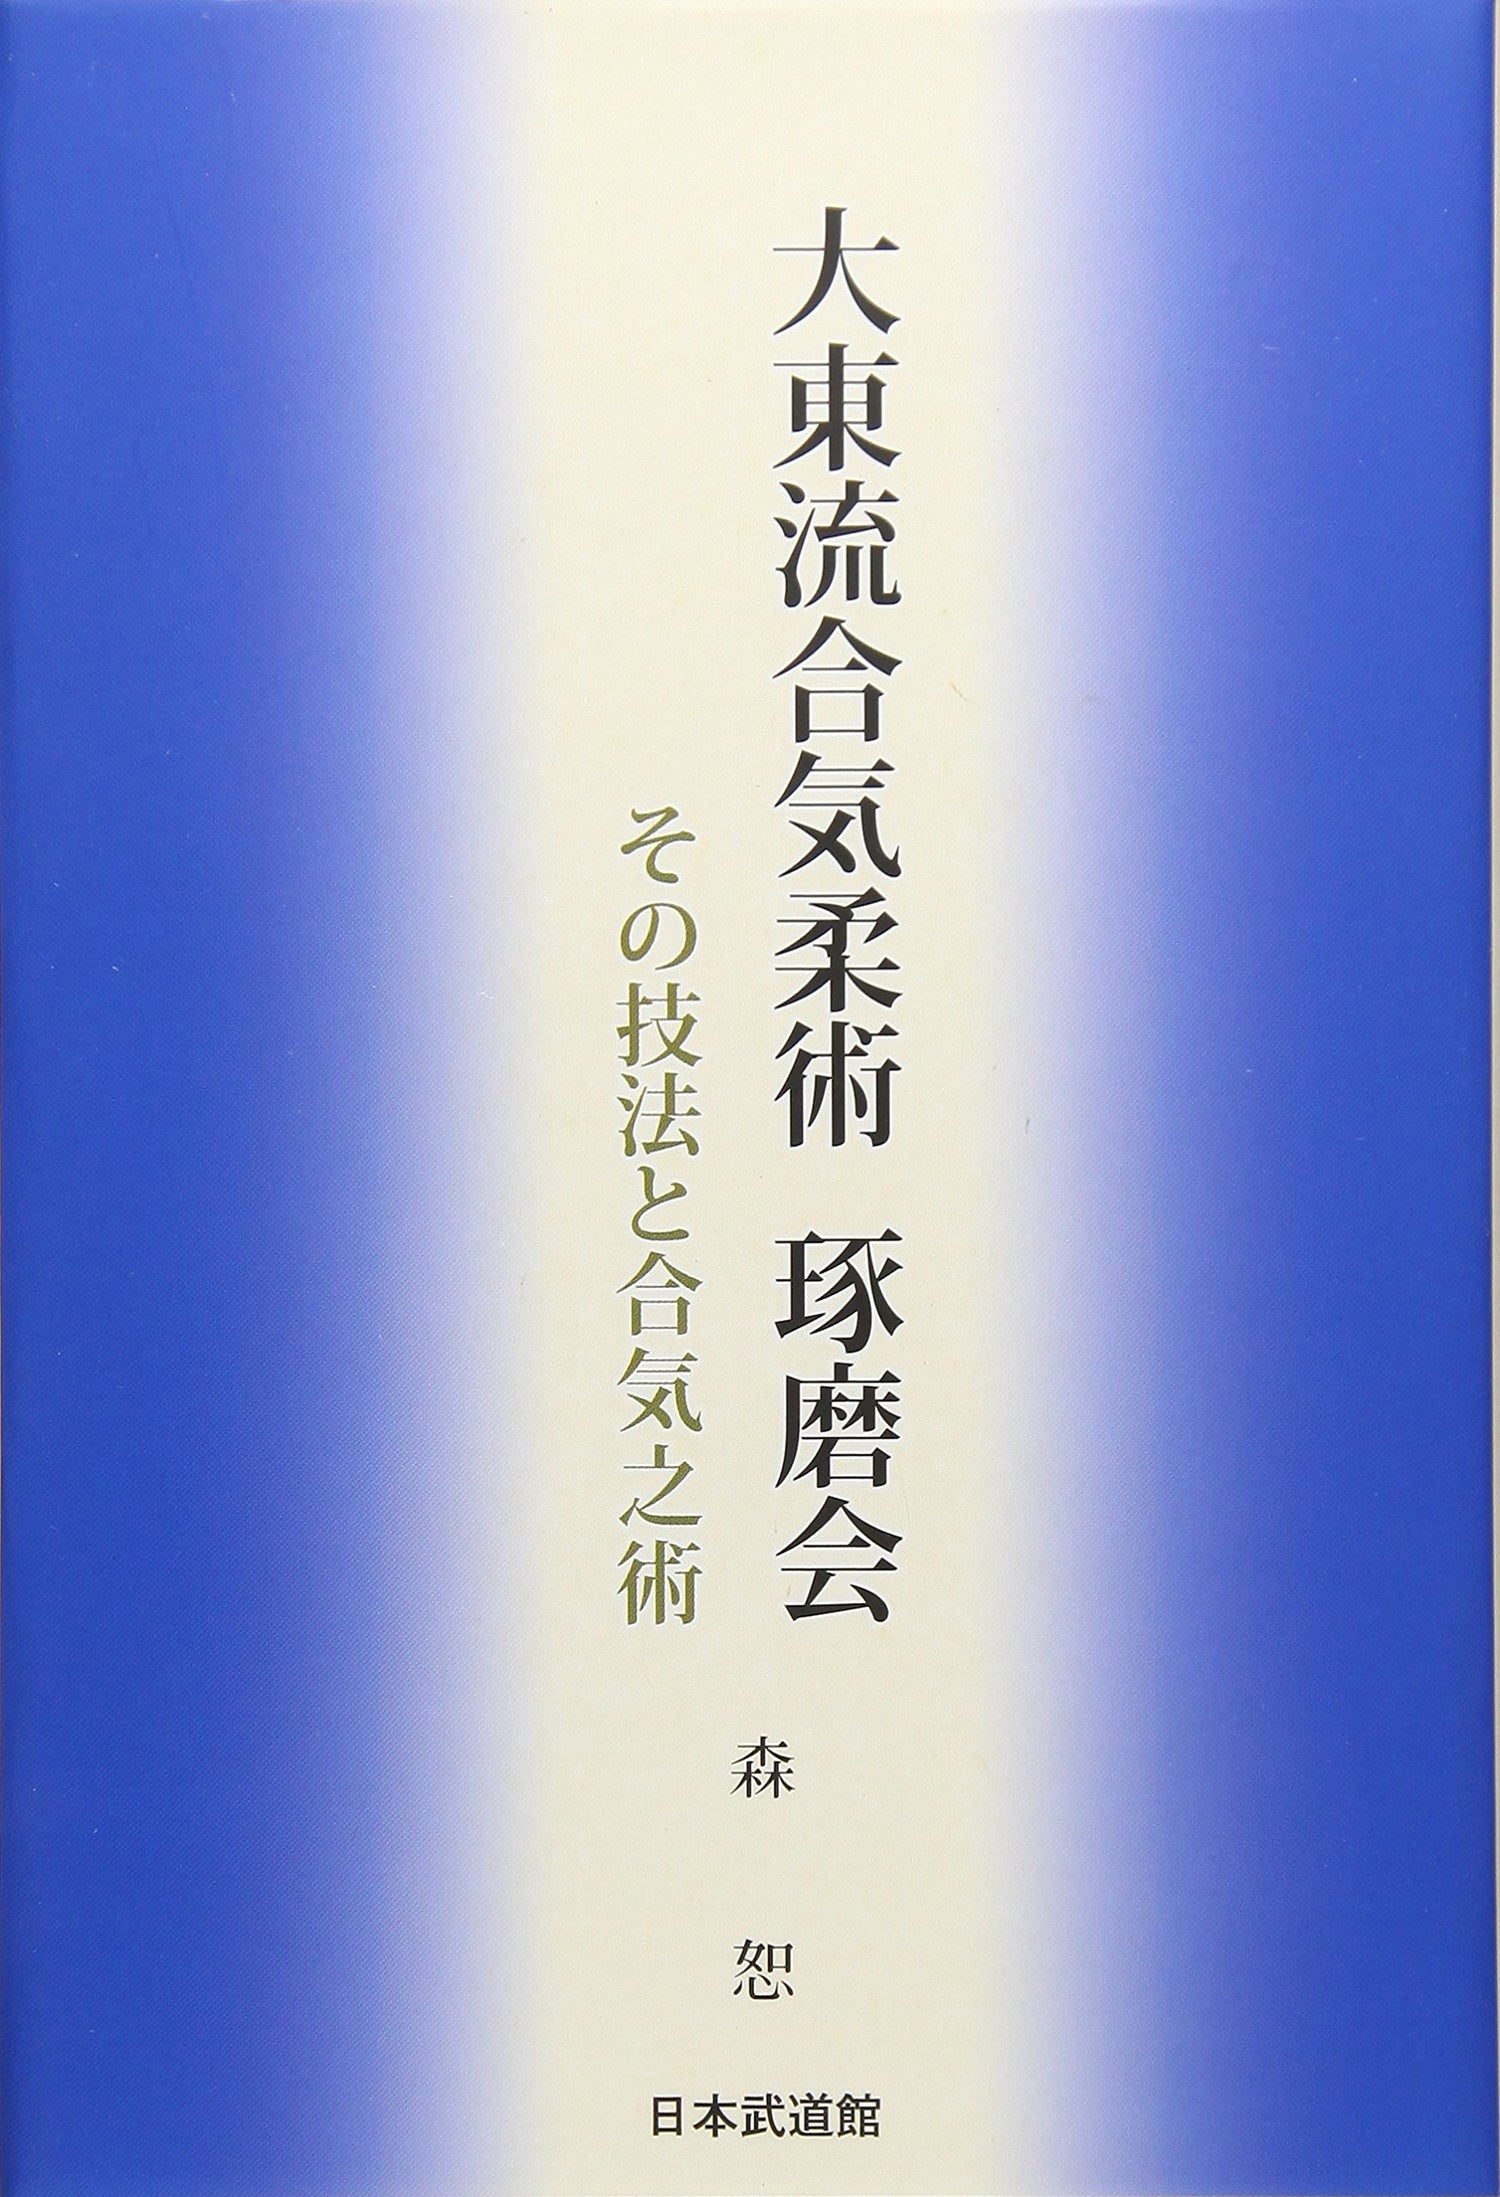 Daito Ryu Aikijujutsu Takumakai: Secrets & Aiki Techniques Book by Hakaru Mori - Budovideos